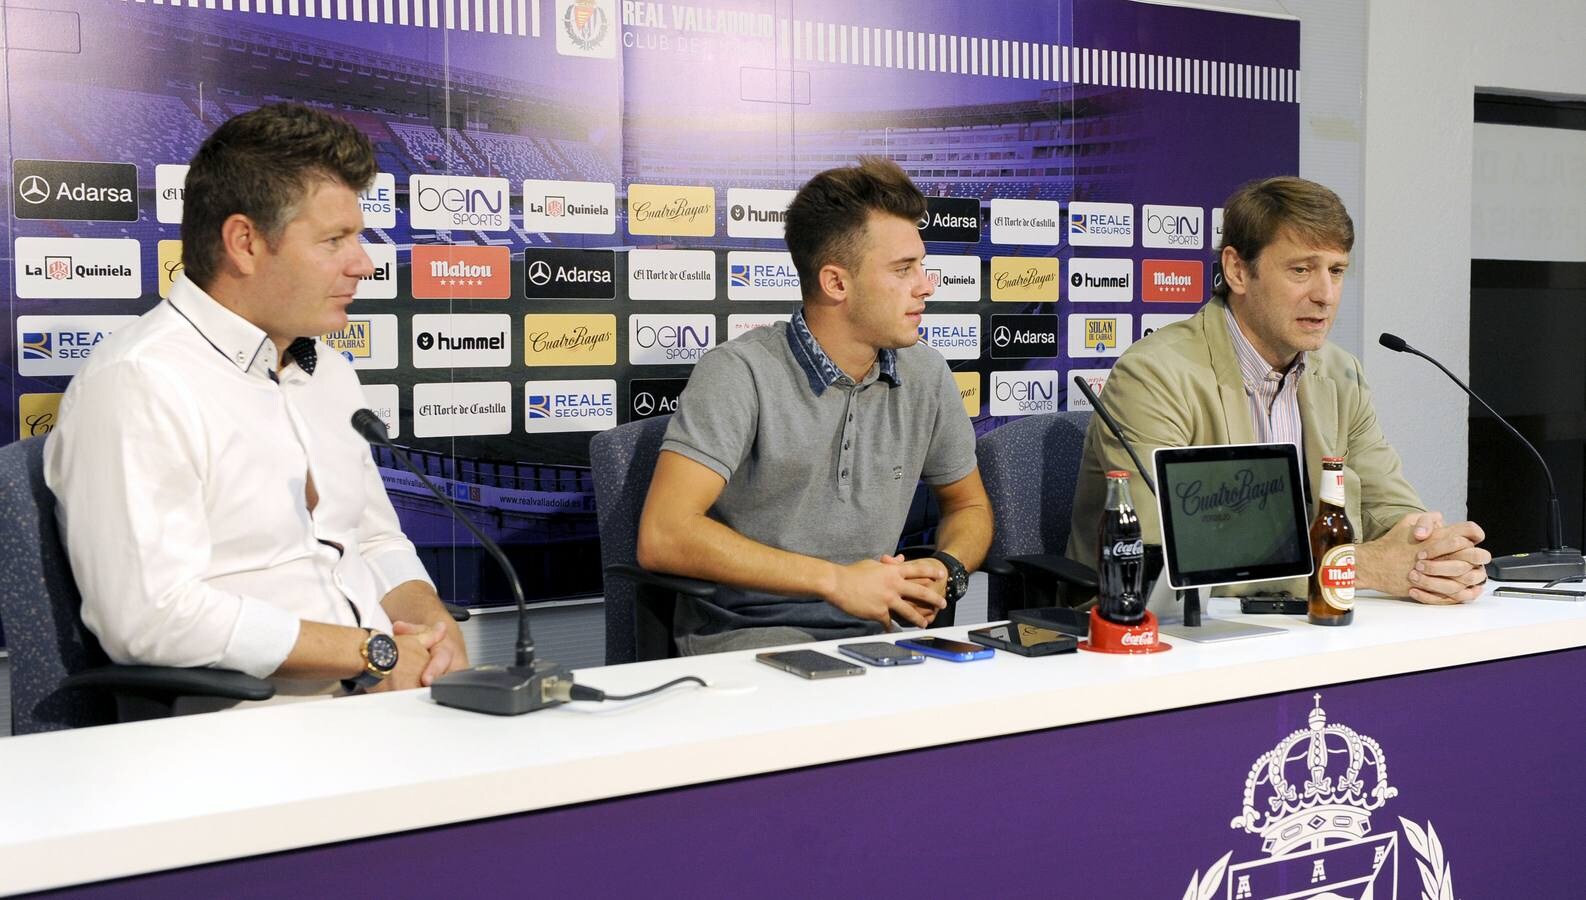 El Real Valladolid presenta a Dejan Drazic